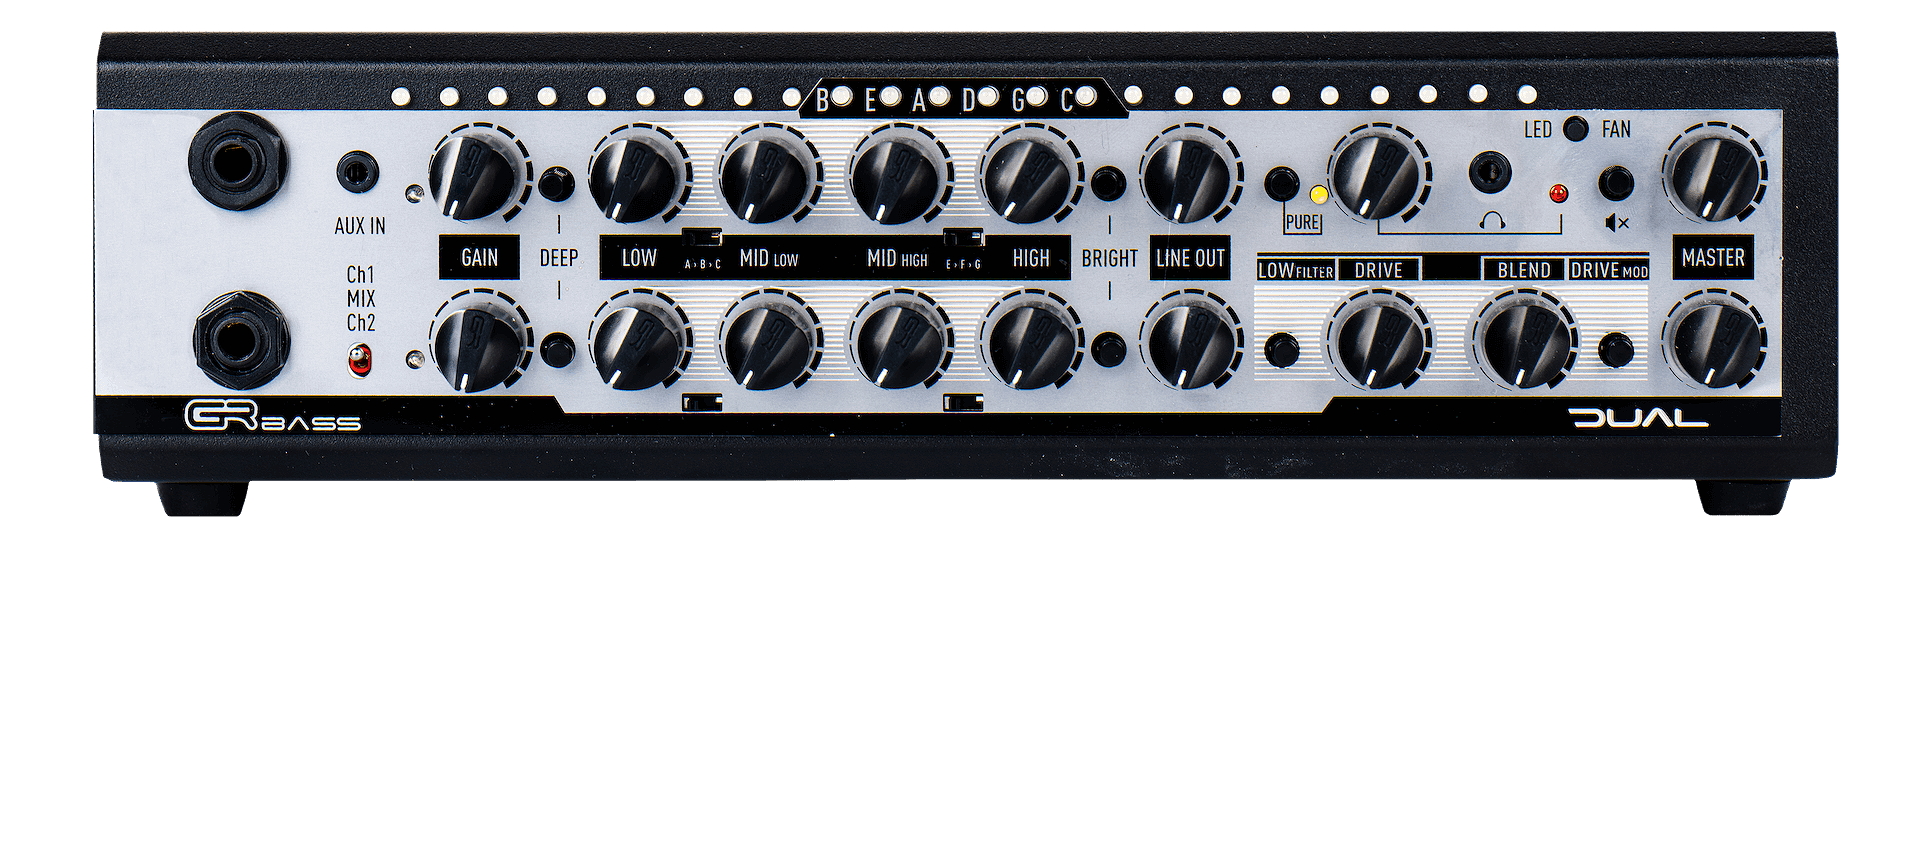 GR Bass DUAL 800 2-Channel Bass Amp